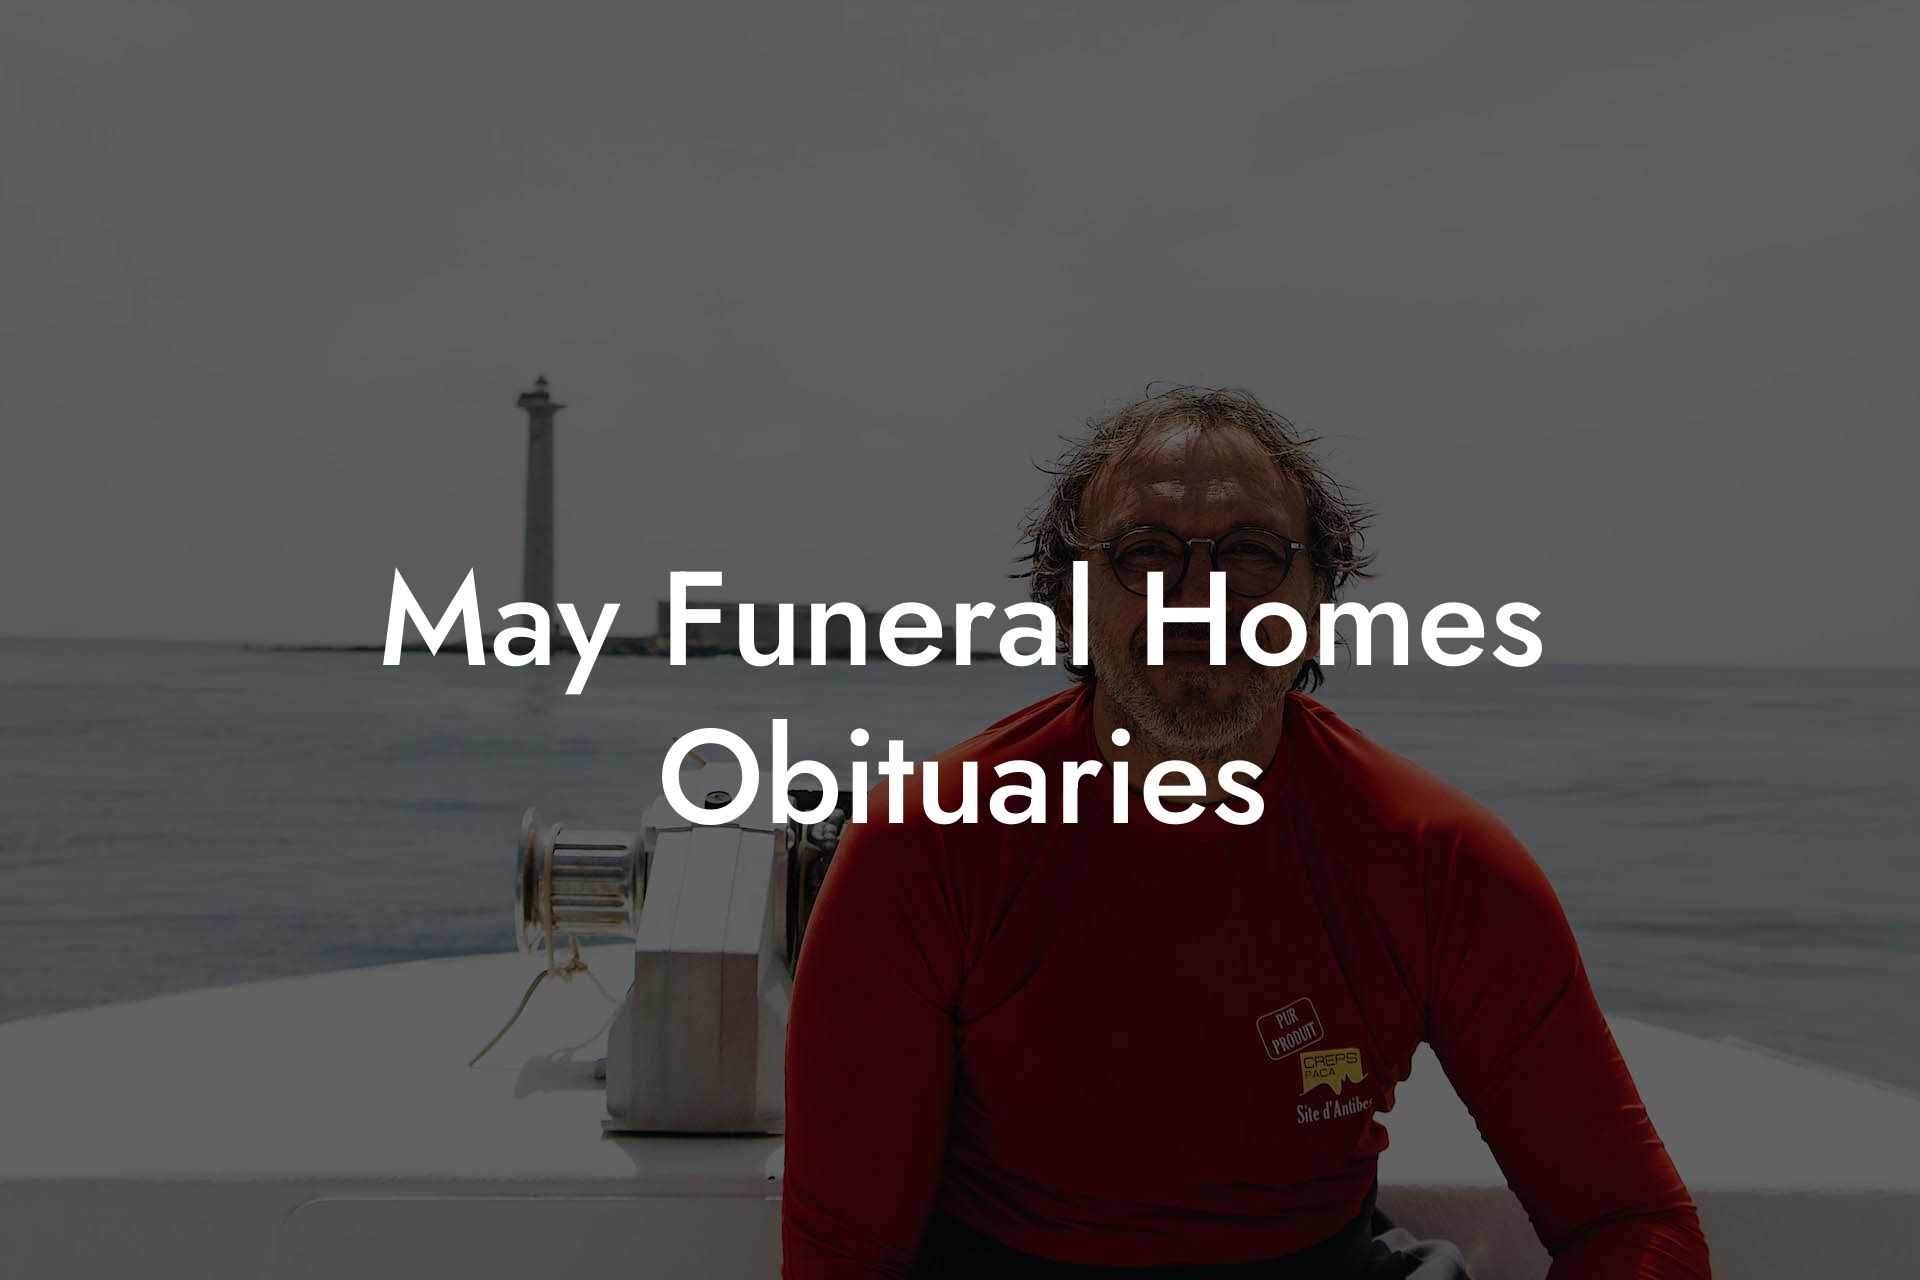 May Funeral Homes Obituaries